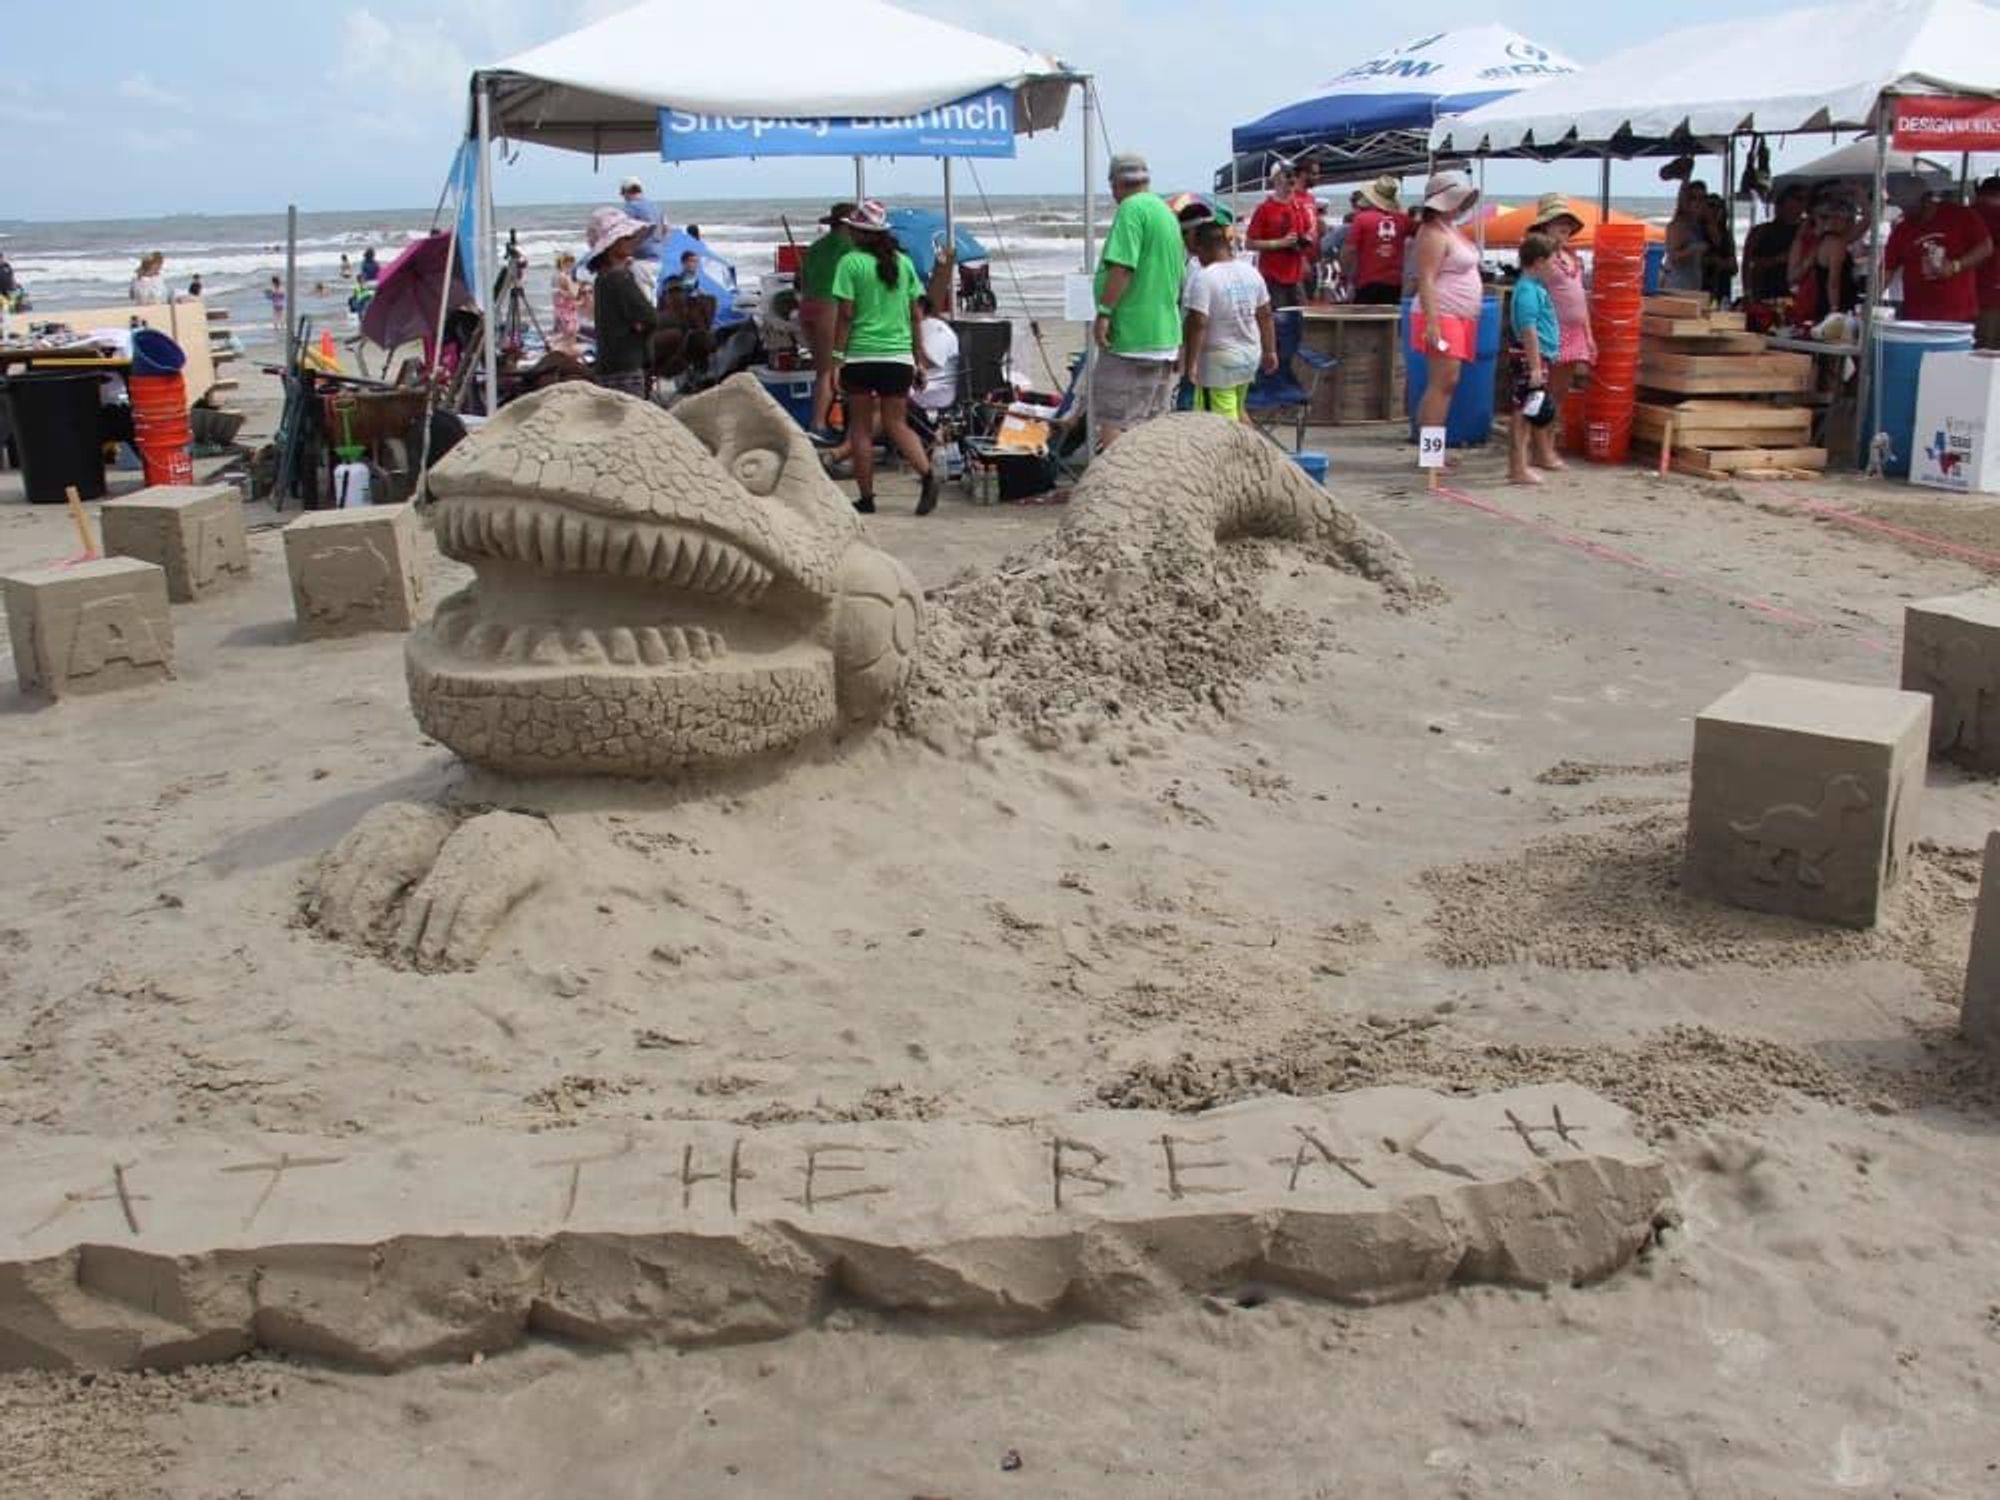 AIA Sandcastle contest, Galveston, 8/16